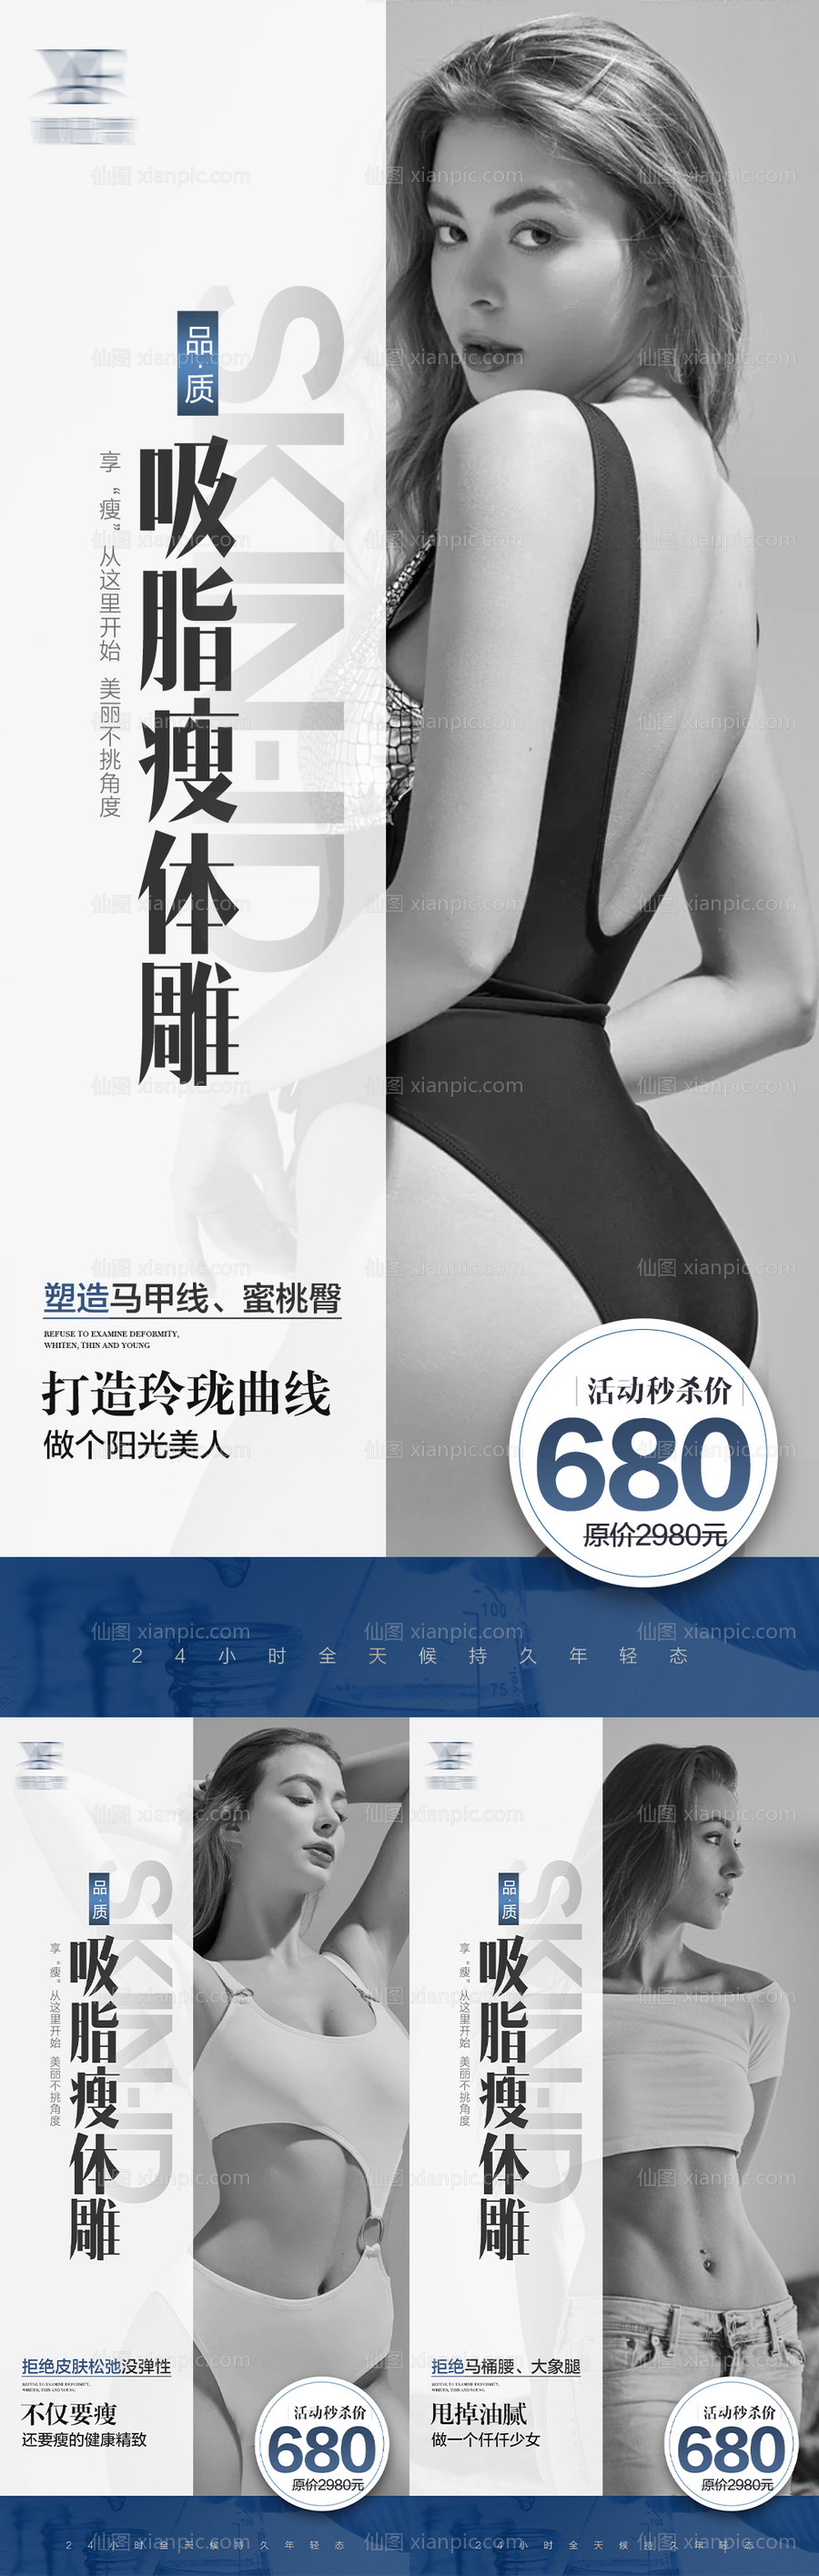 素材乐-瘦身吸脂身材系列海报